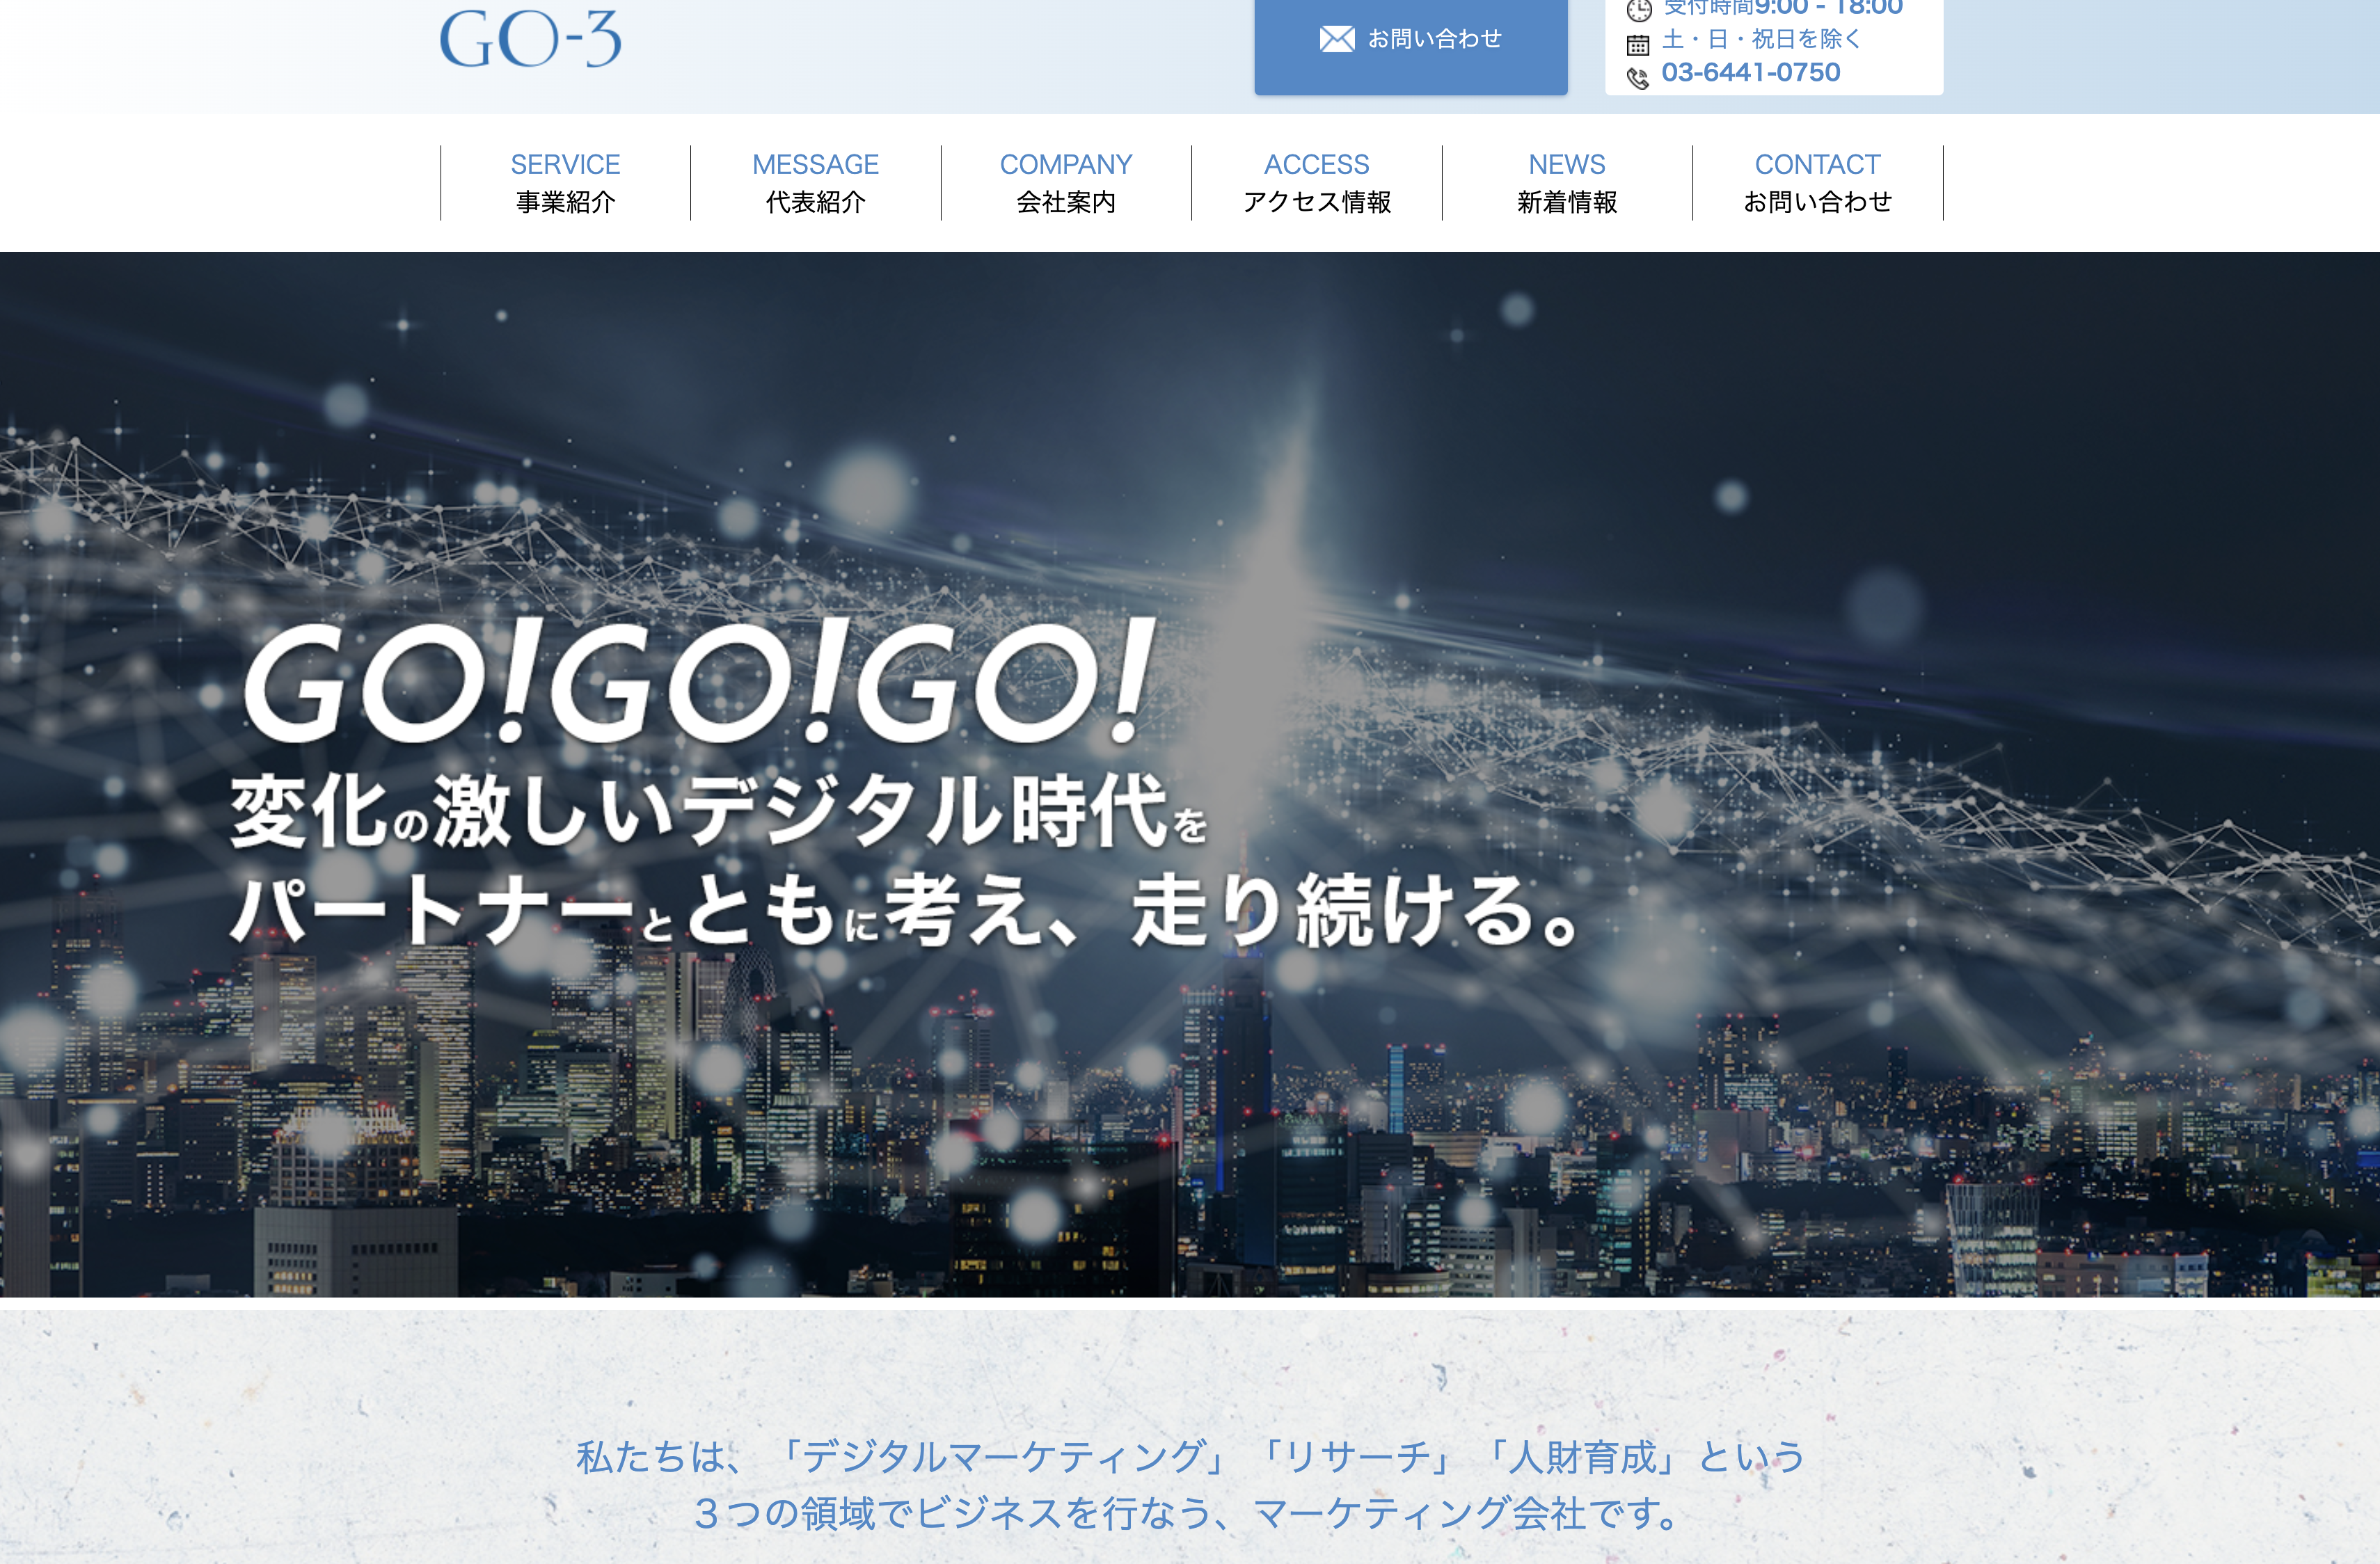 株式会社GO-3の株式会社GO-3:マス広告サービス